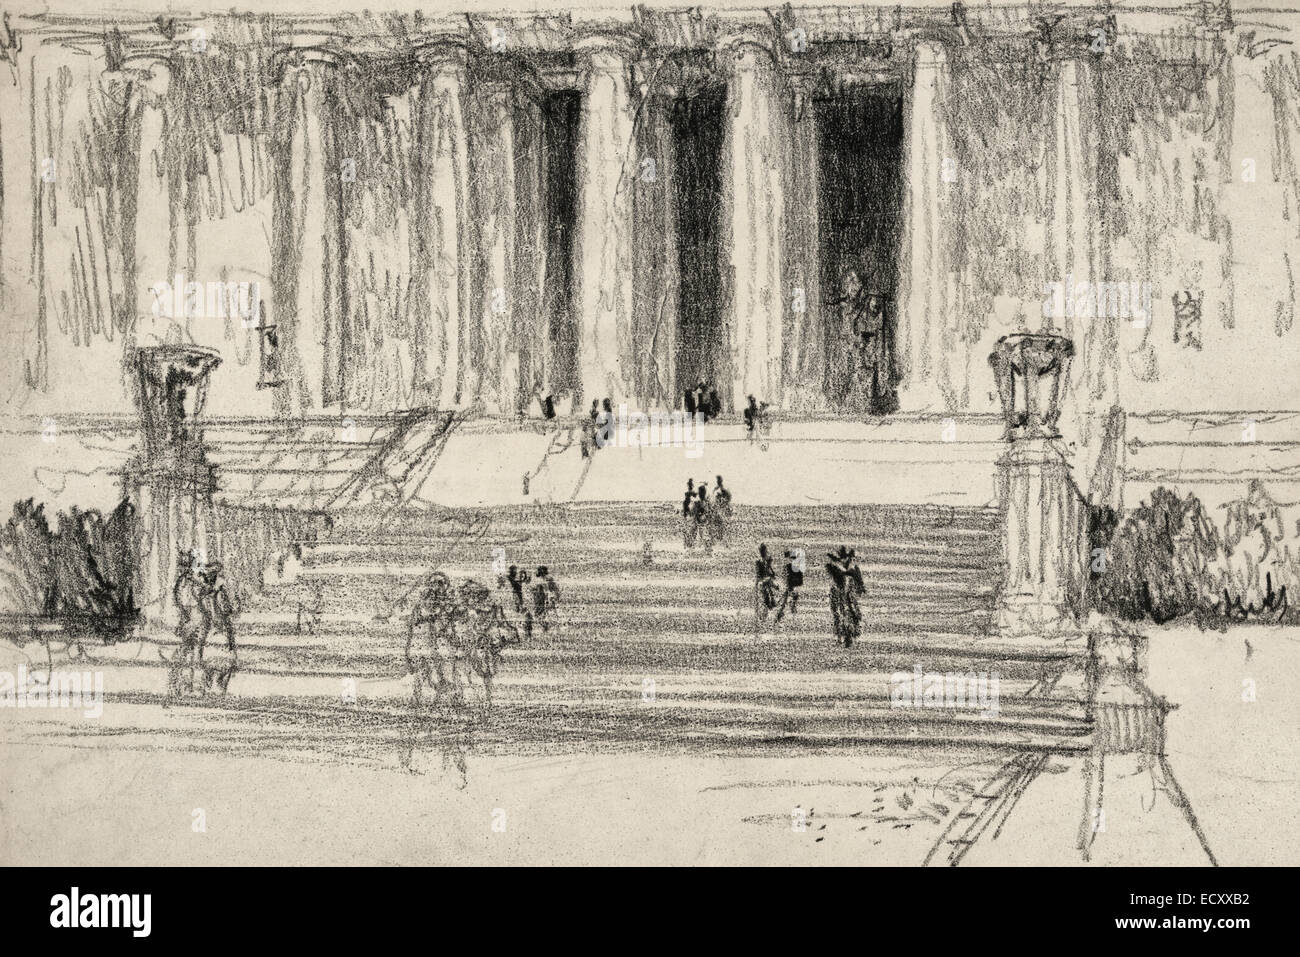 Schritte zum Lincoln Memorial - Washington, DC. Detailansicht der Figuren auf Stufen zum Lincoln Memorial, Statue von Lincoln sichtbar zwischen korinthischen Säulen hinaus ca. 1922 Stockfoto